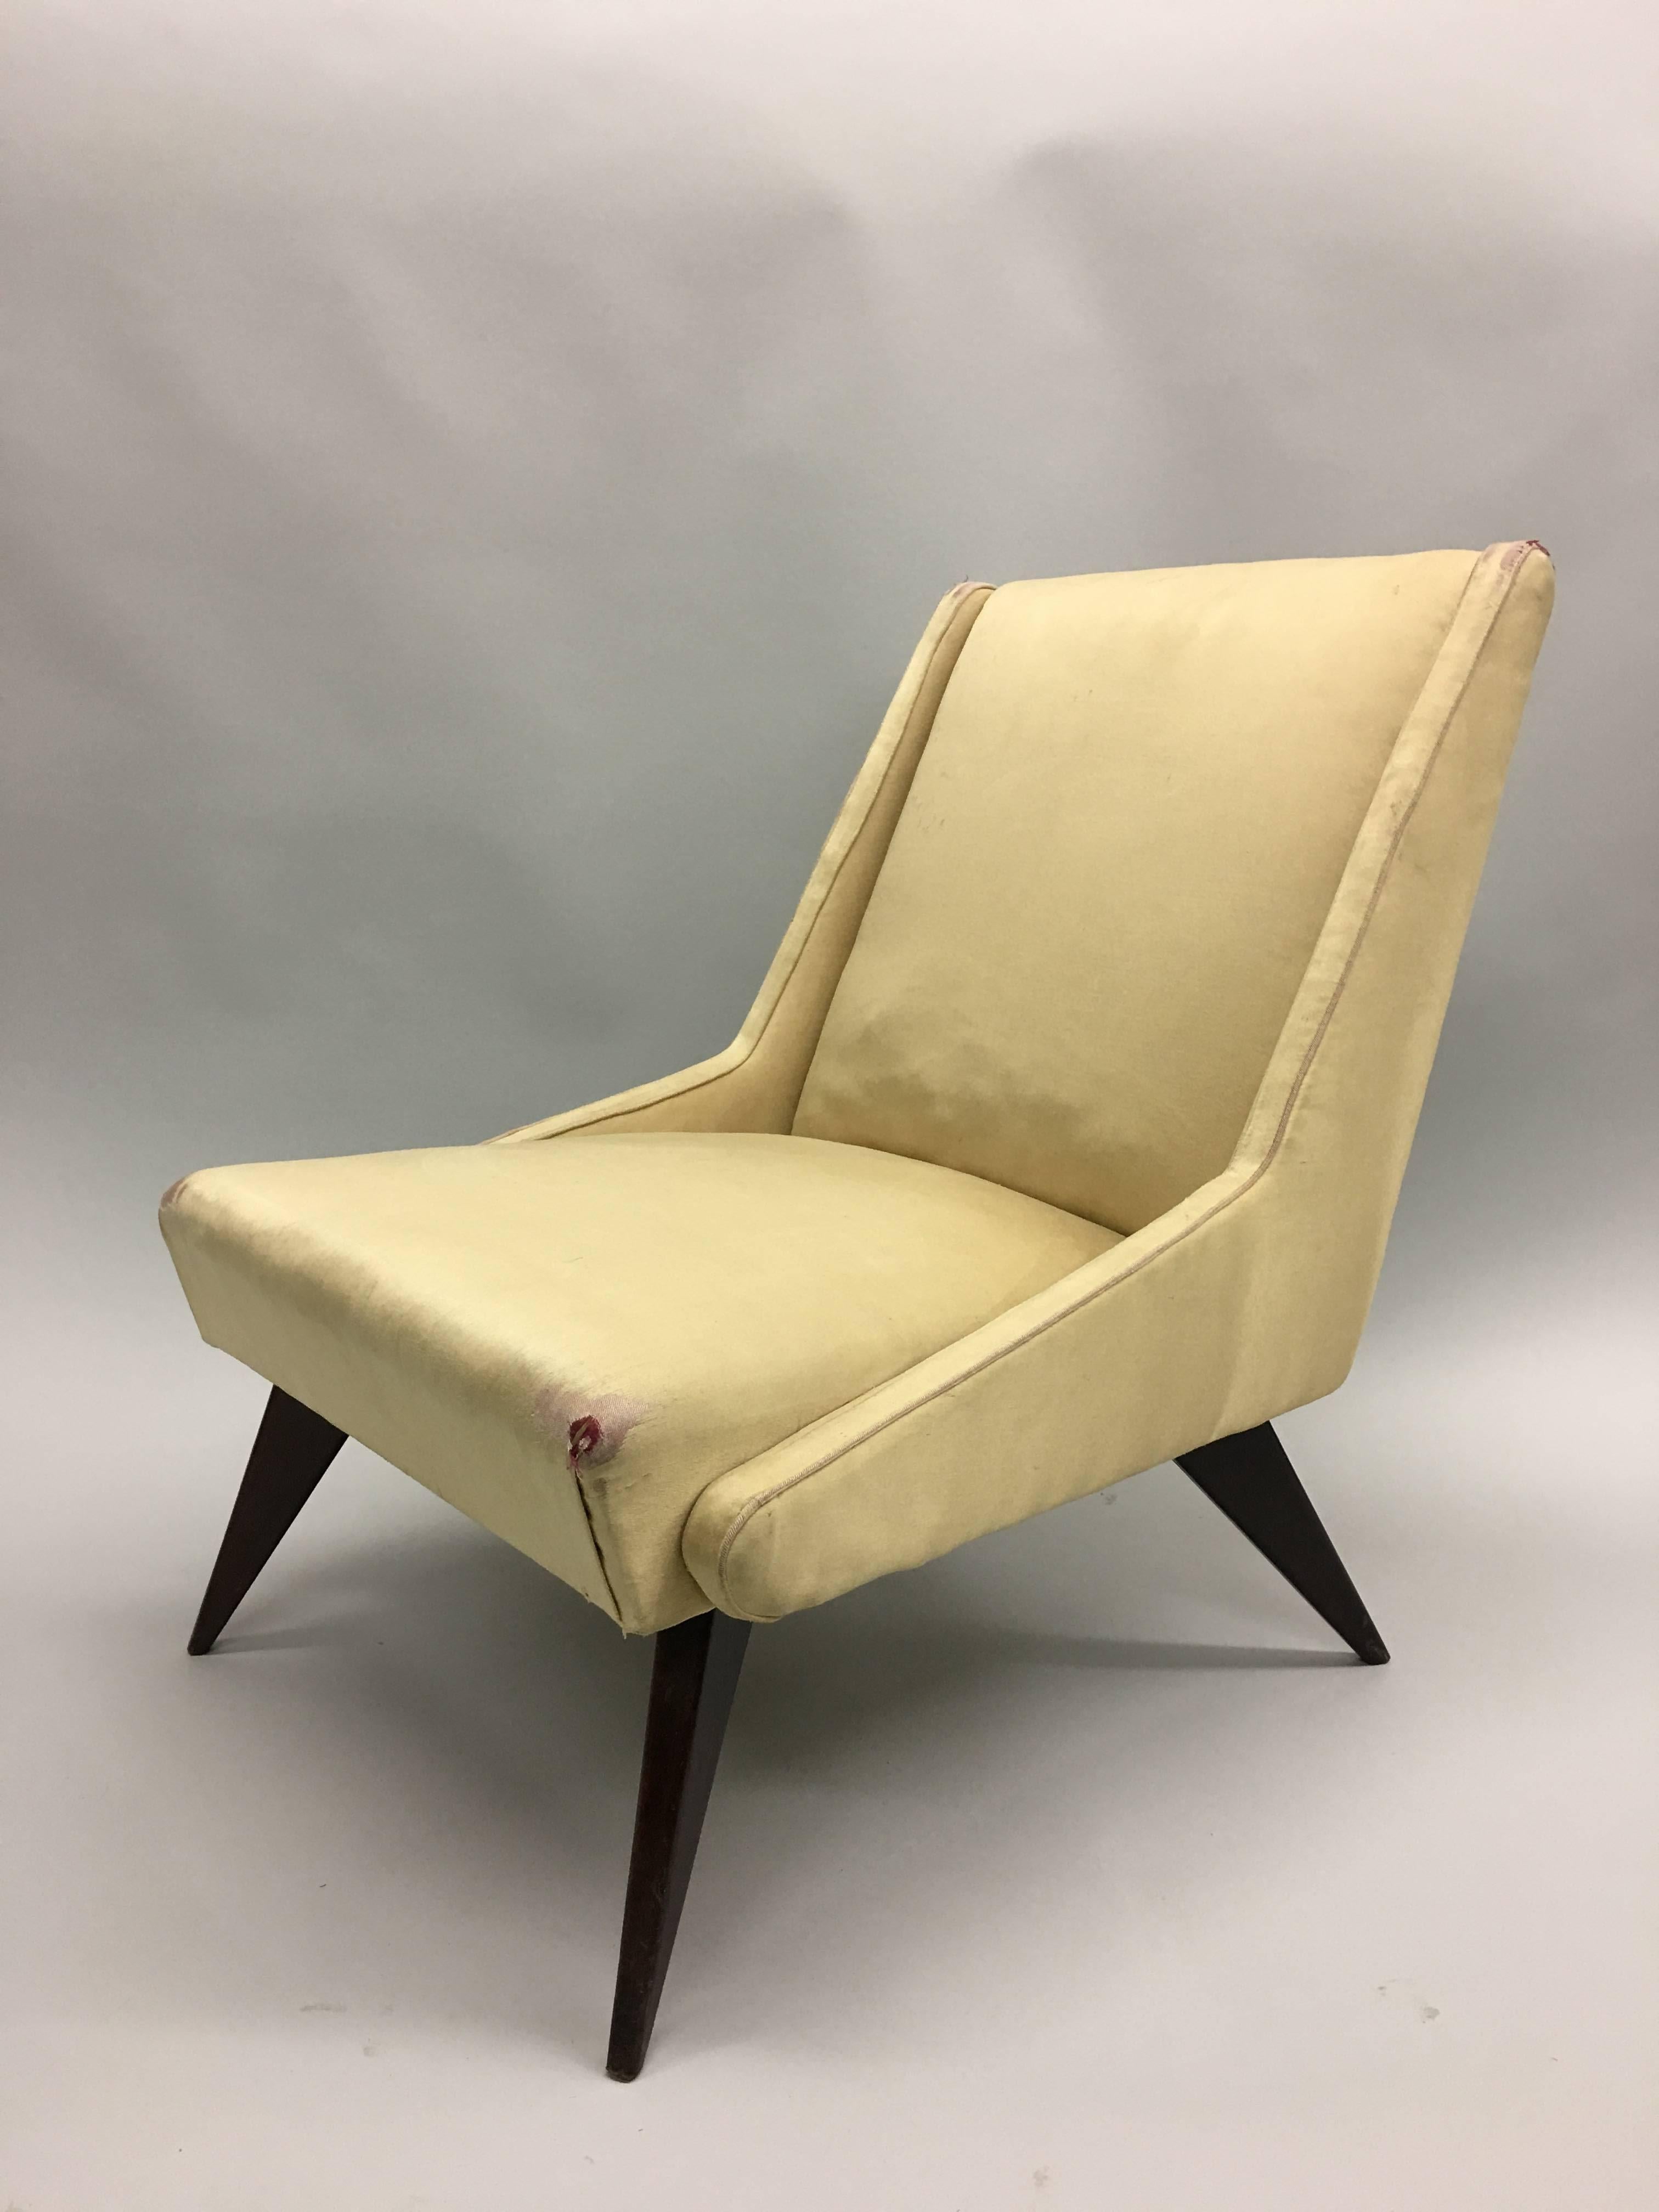 Paire iconique de fauteuils italiens des années 1950 par ISA en bois dur et tapisserie reposant sur des pieds évasés et effilés et présentant d'élégants accoudoirs et supports latéraux angulaires. Des chefs-d'œuvre de design, sobres et sensuels.